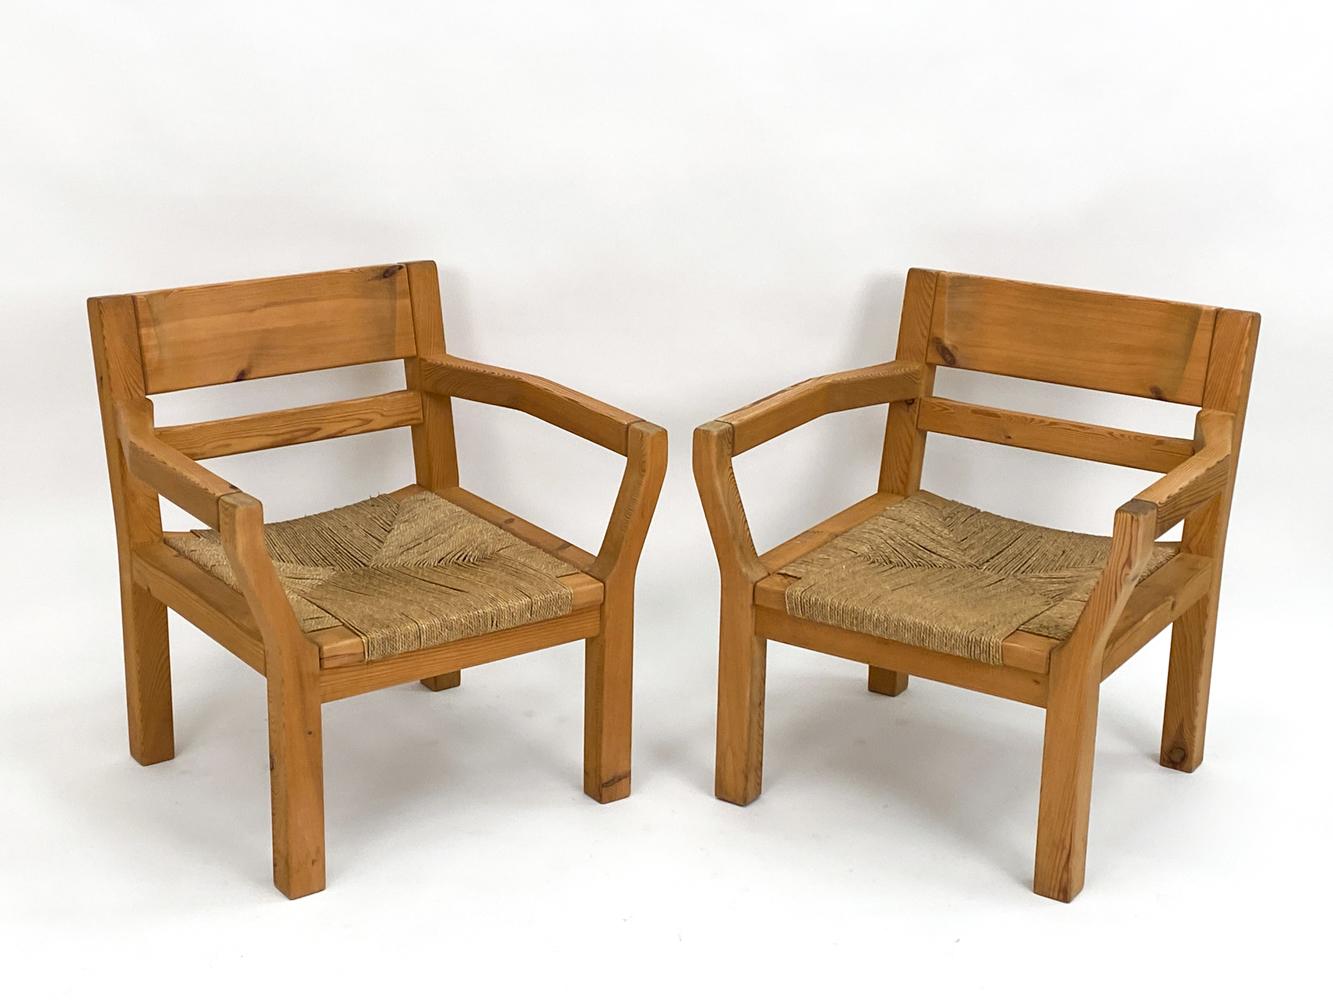 Plongez dans la beauté sereine du design scandinave avec cette paire de chaises longues, fabriquées de main de maître par le célèbre designer Tage Poulsen dans les années 1970. Mariage harmonieux de la nature brute et de l'artisanat humain, ces